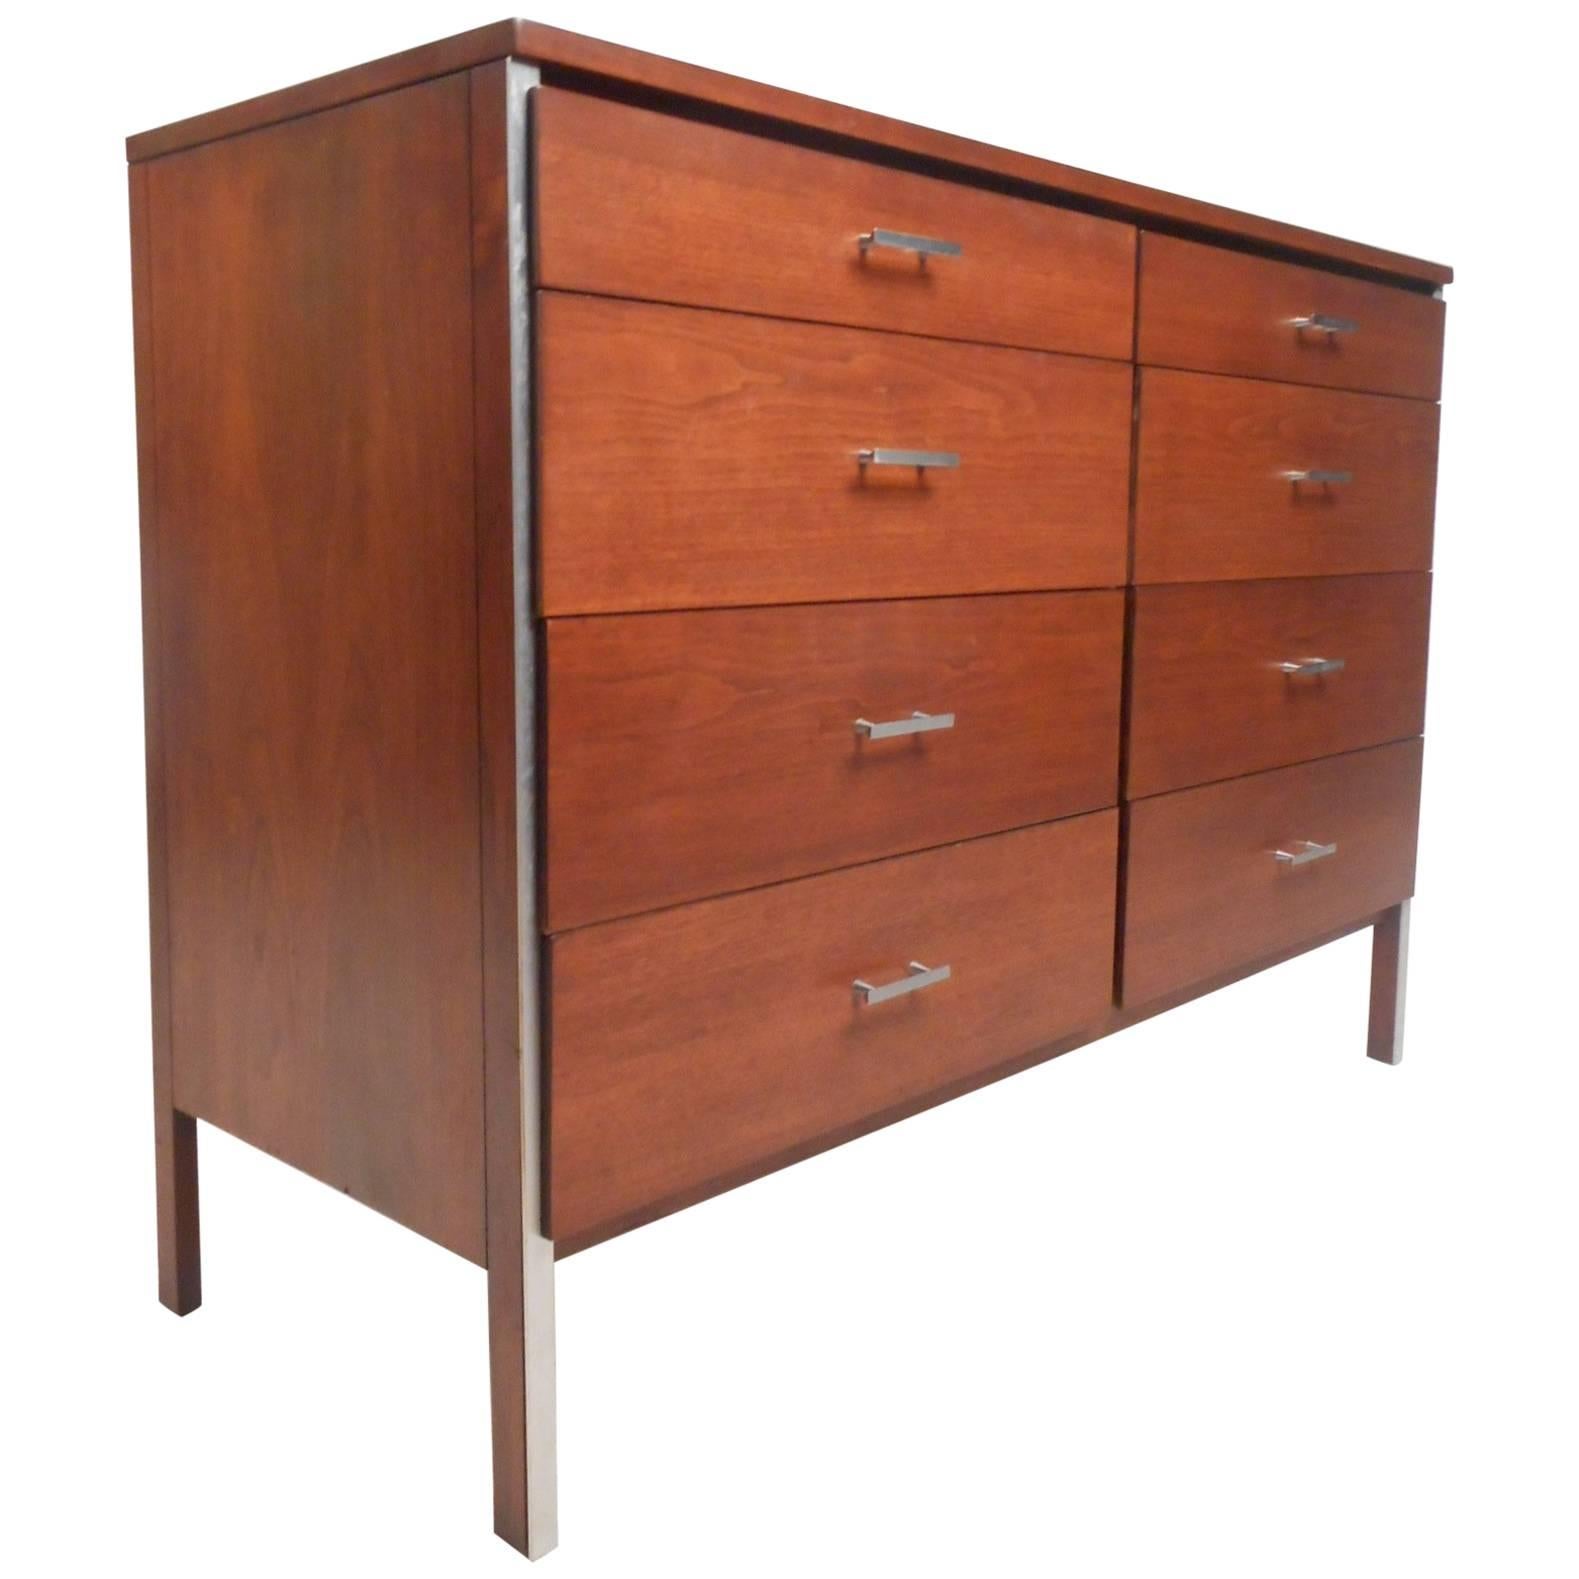 Paul McCobb Dresser for Calvin Furniture